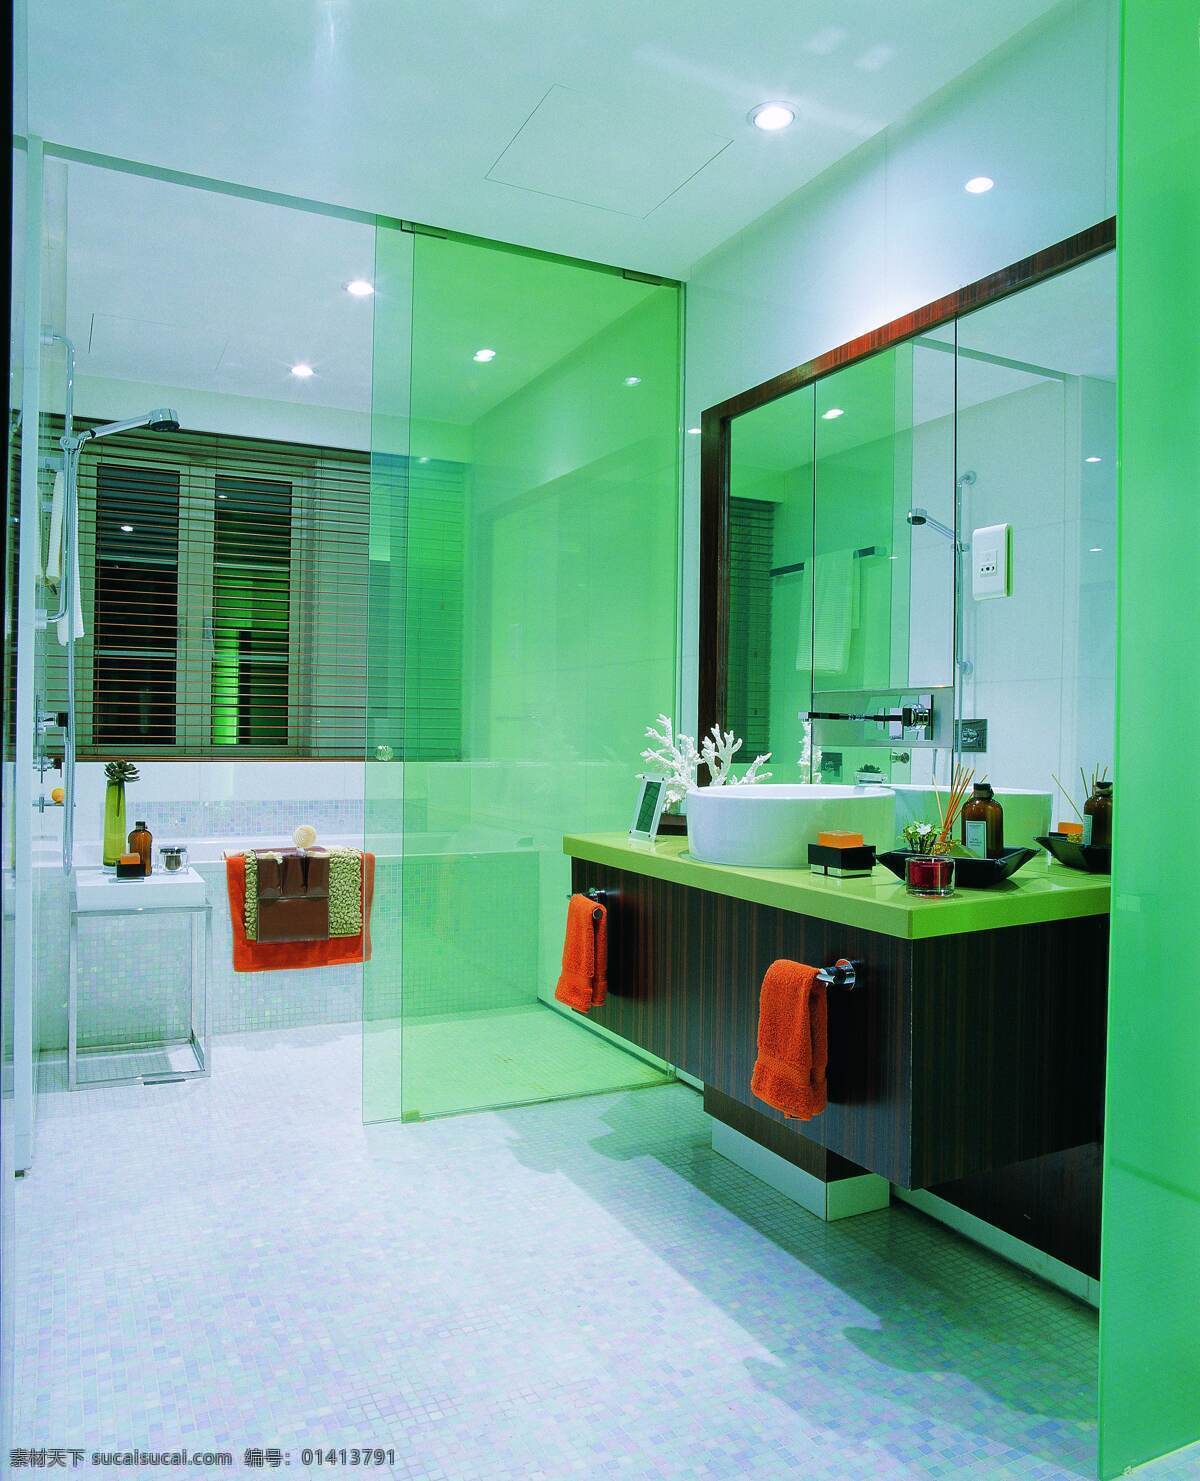 室内设计 百叶窗 建筑园林 镜子 室内摄影 卫生间 浴缸 洗手台 马赛克瓷砖 装饰素材 室内装饰用图